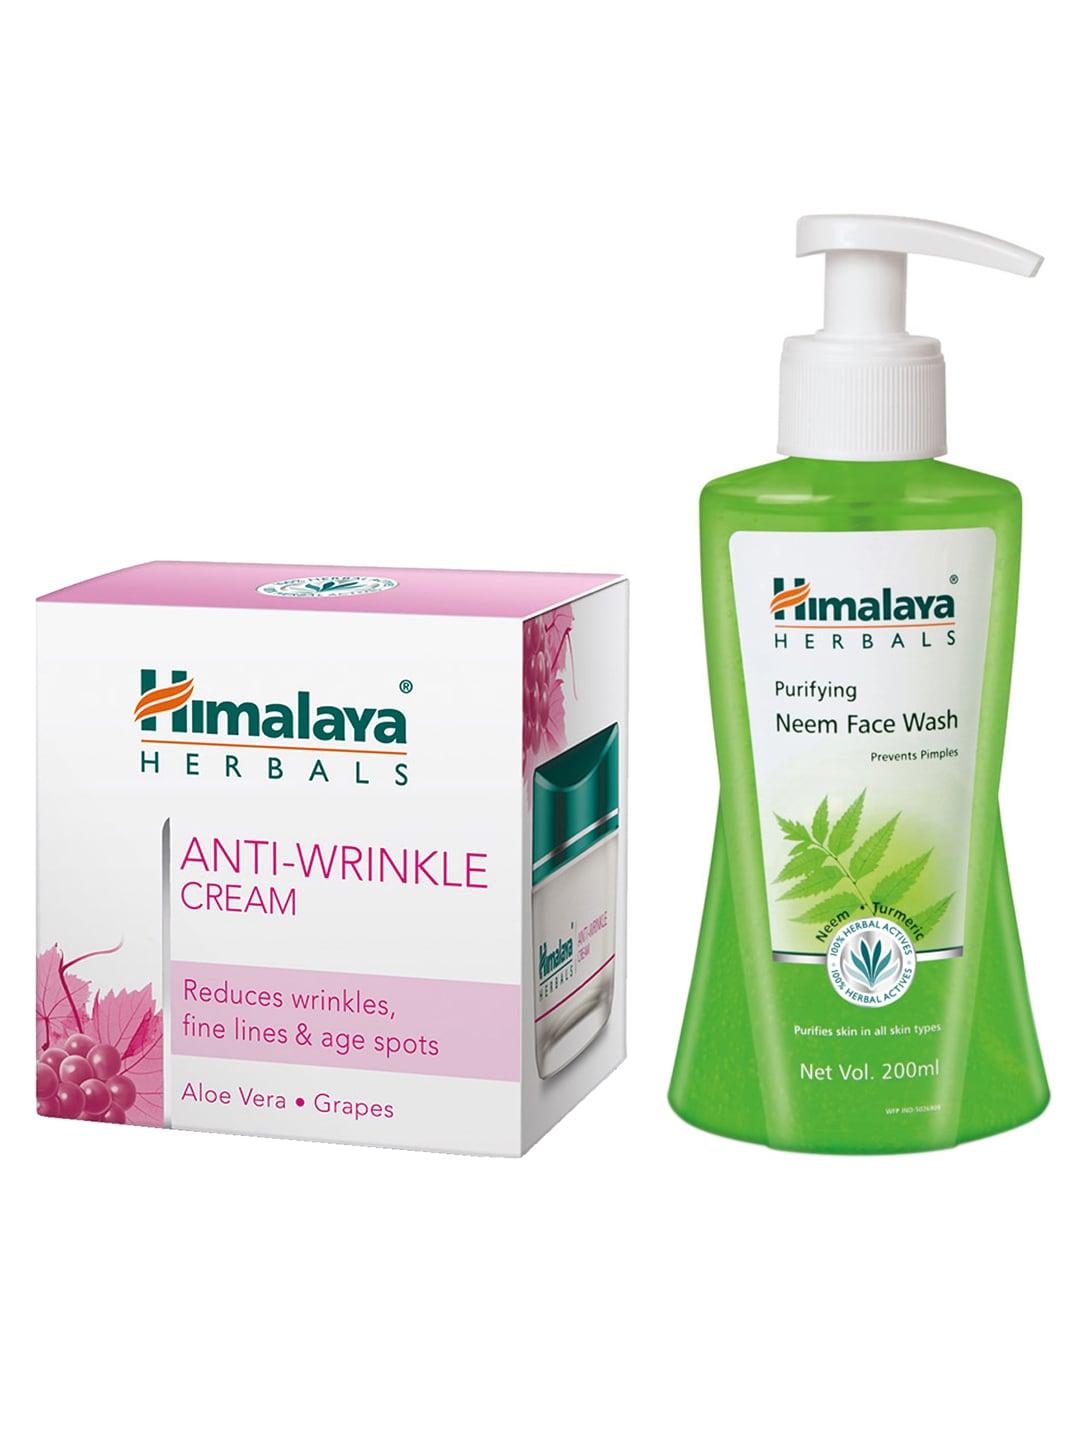 Himalaya Set of Purifying Neem Face Wash & Anti-Wrinkle Cream